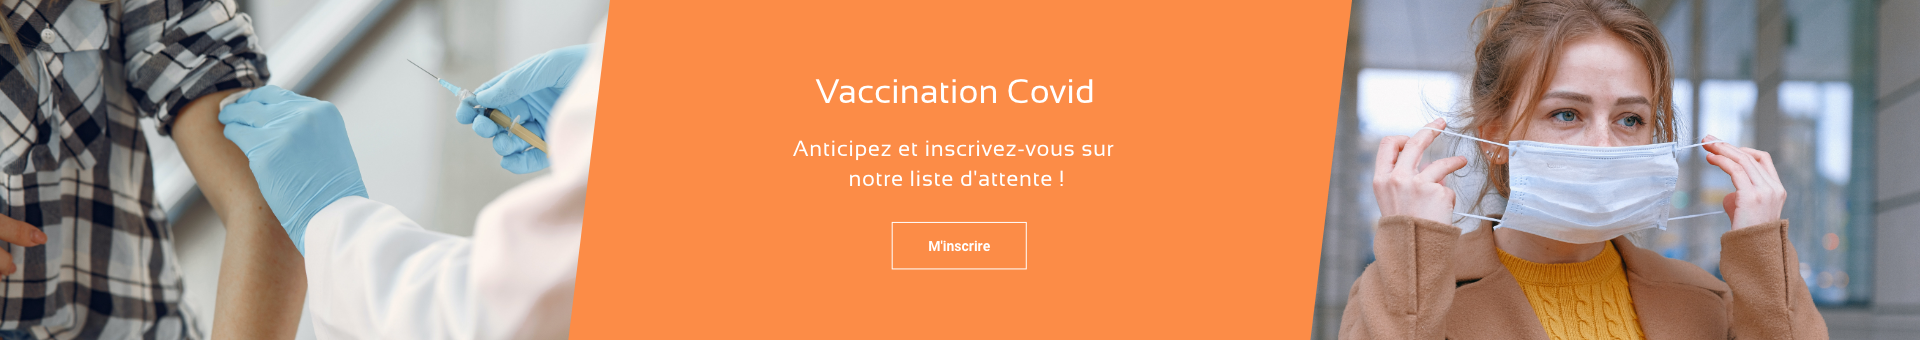 Vaccination Covid sur rendez-vous à Pharmacie Léon Blum de Clermont Ferrand